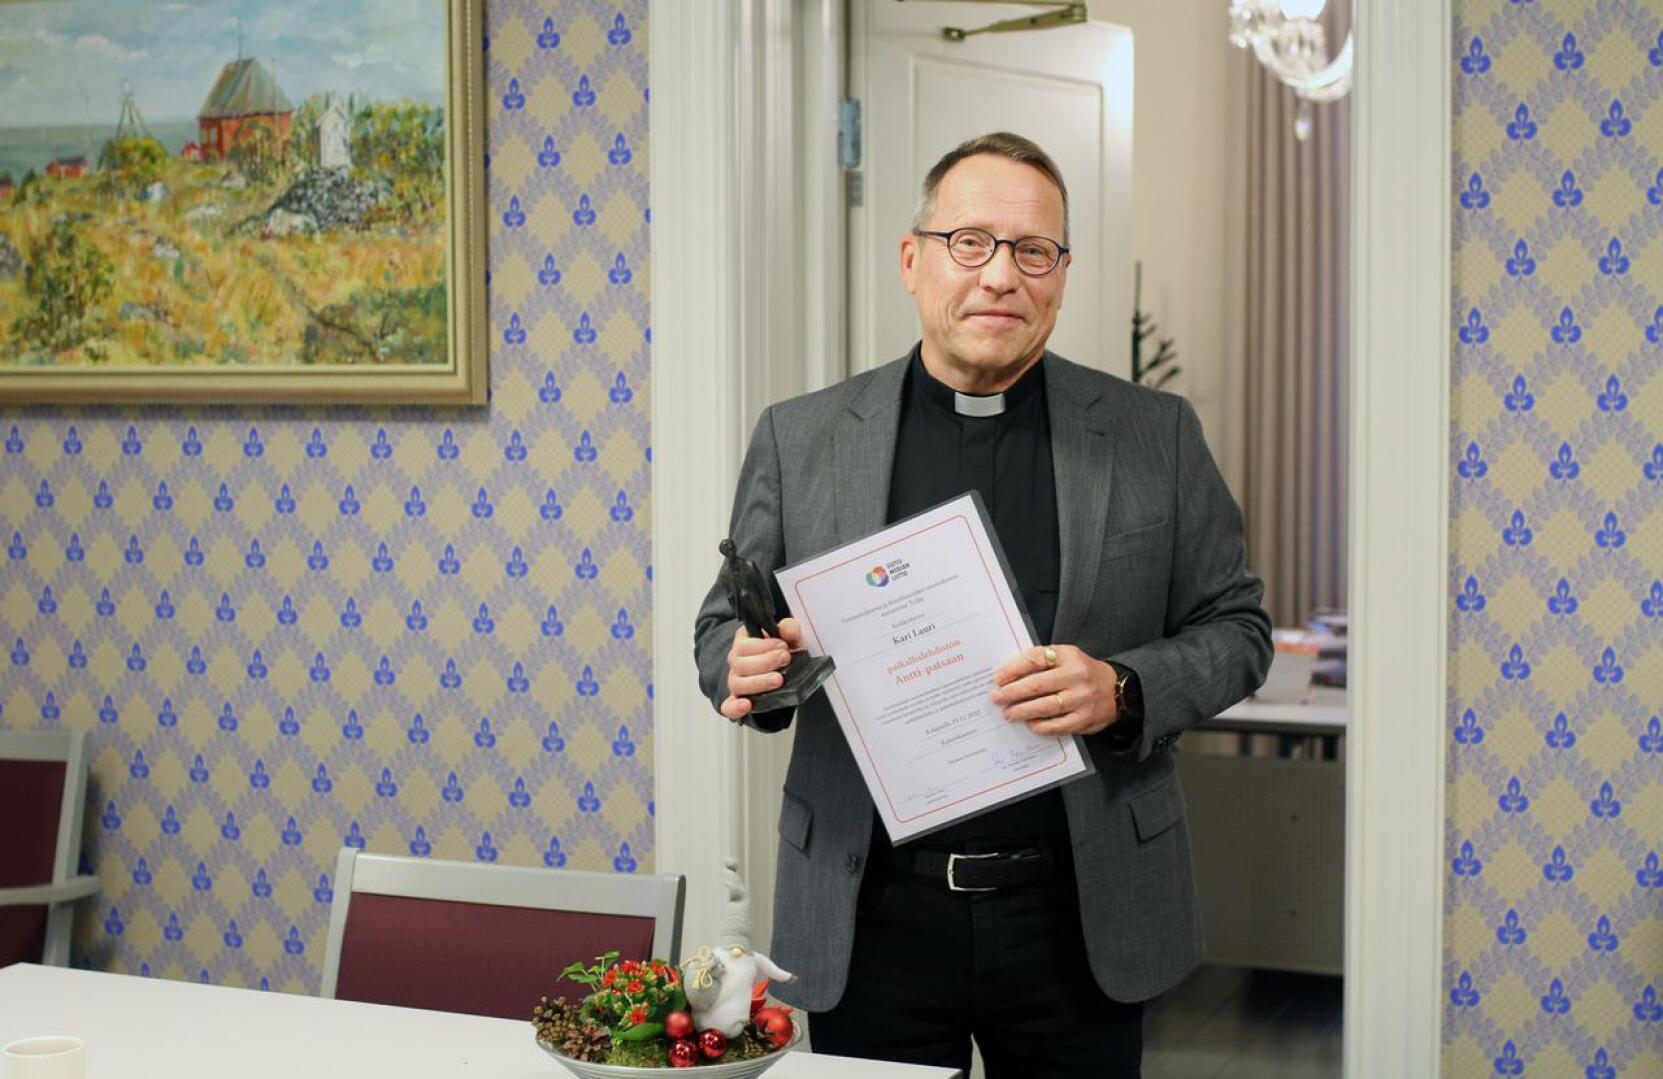 Kirkkoherra Kari Lauri sai lehden Antti-patsaan hyvästä yhteistyöstä ja tiedottamisesta.